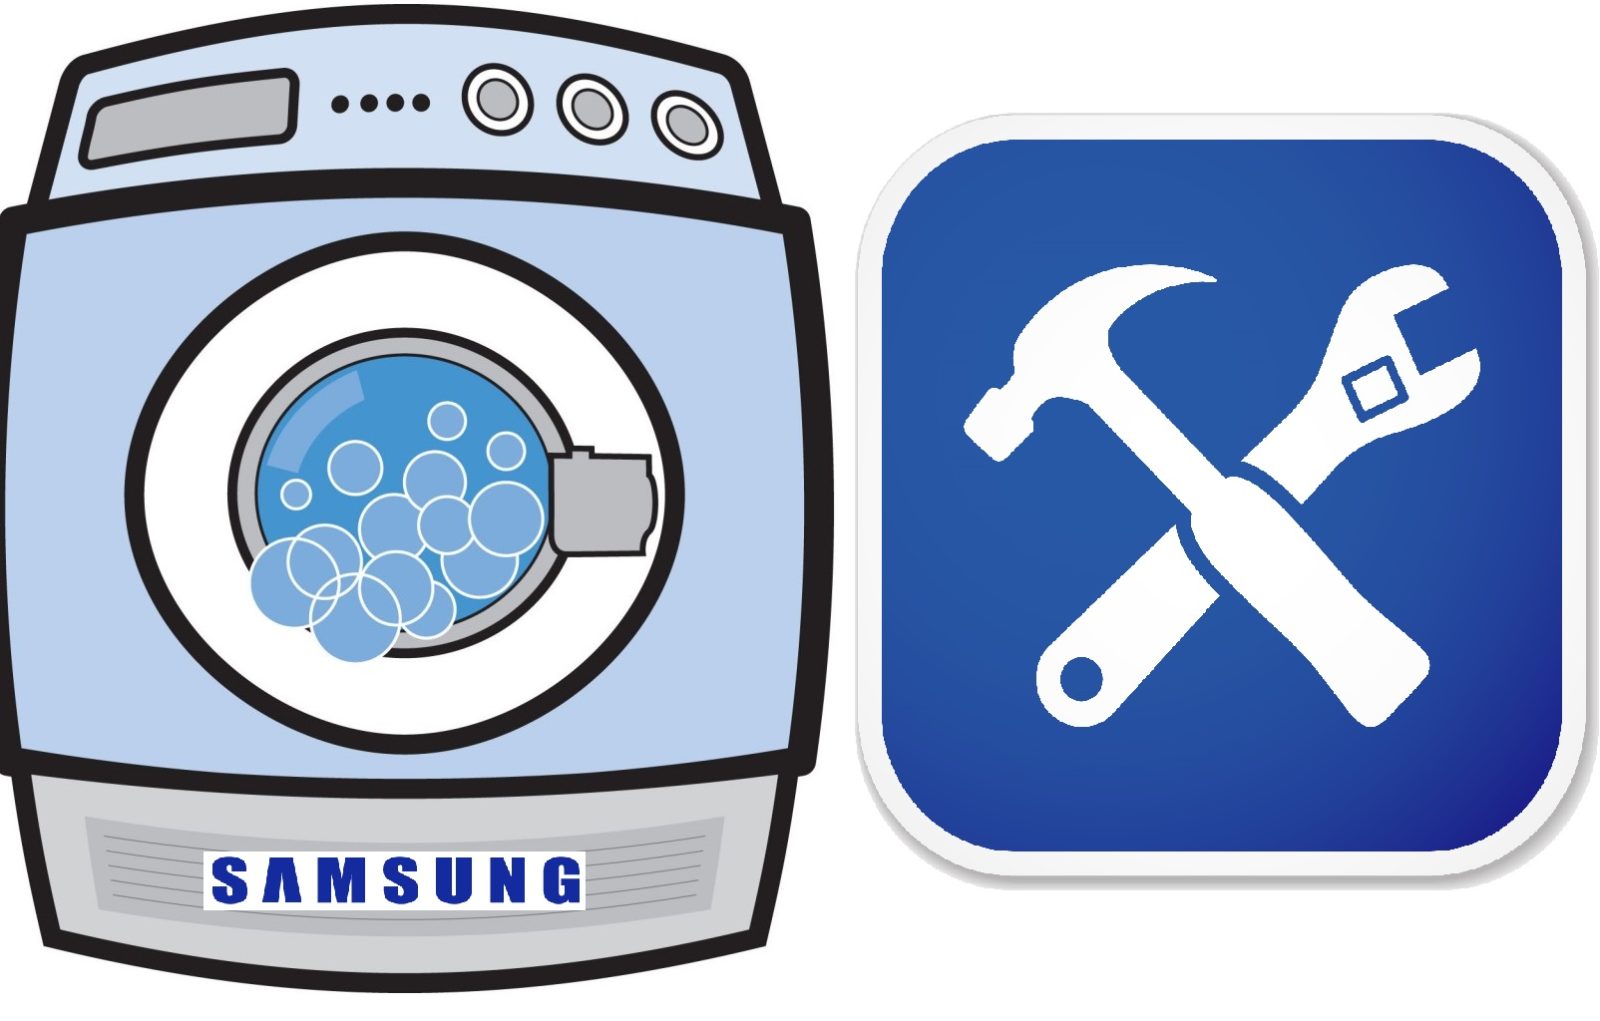 Ang washing machine ng Samsung - hindi gumagana ang pag-ikot at alisan ng tubig